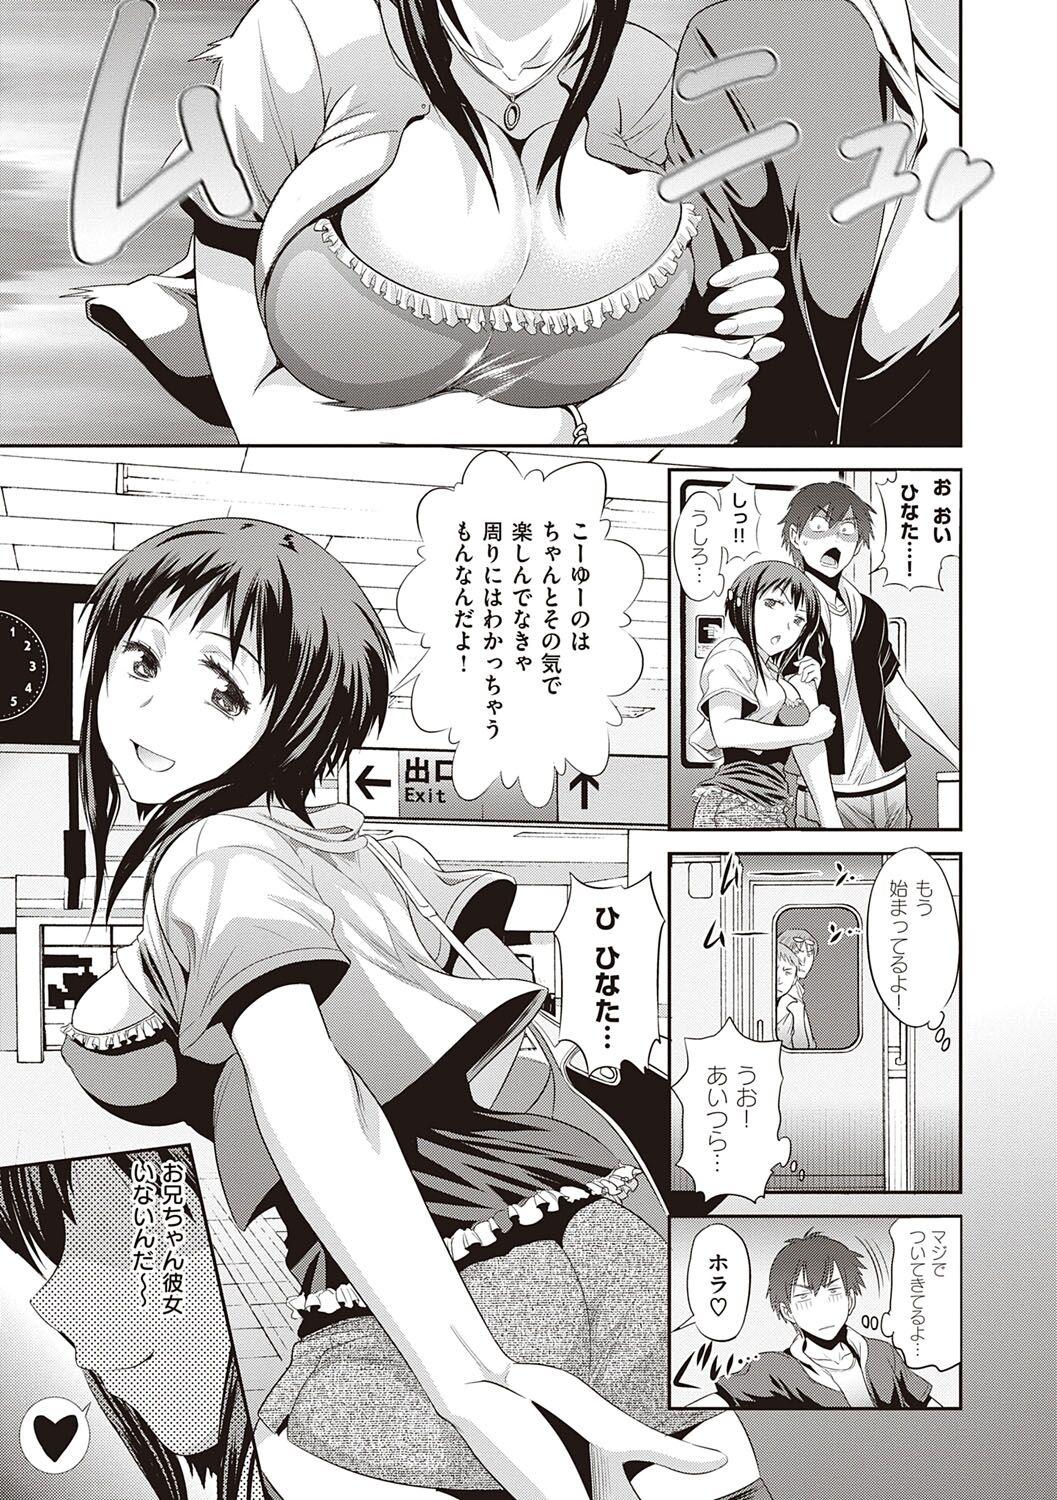 This Hinata Hinata plus Fist - Page 10